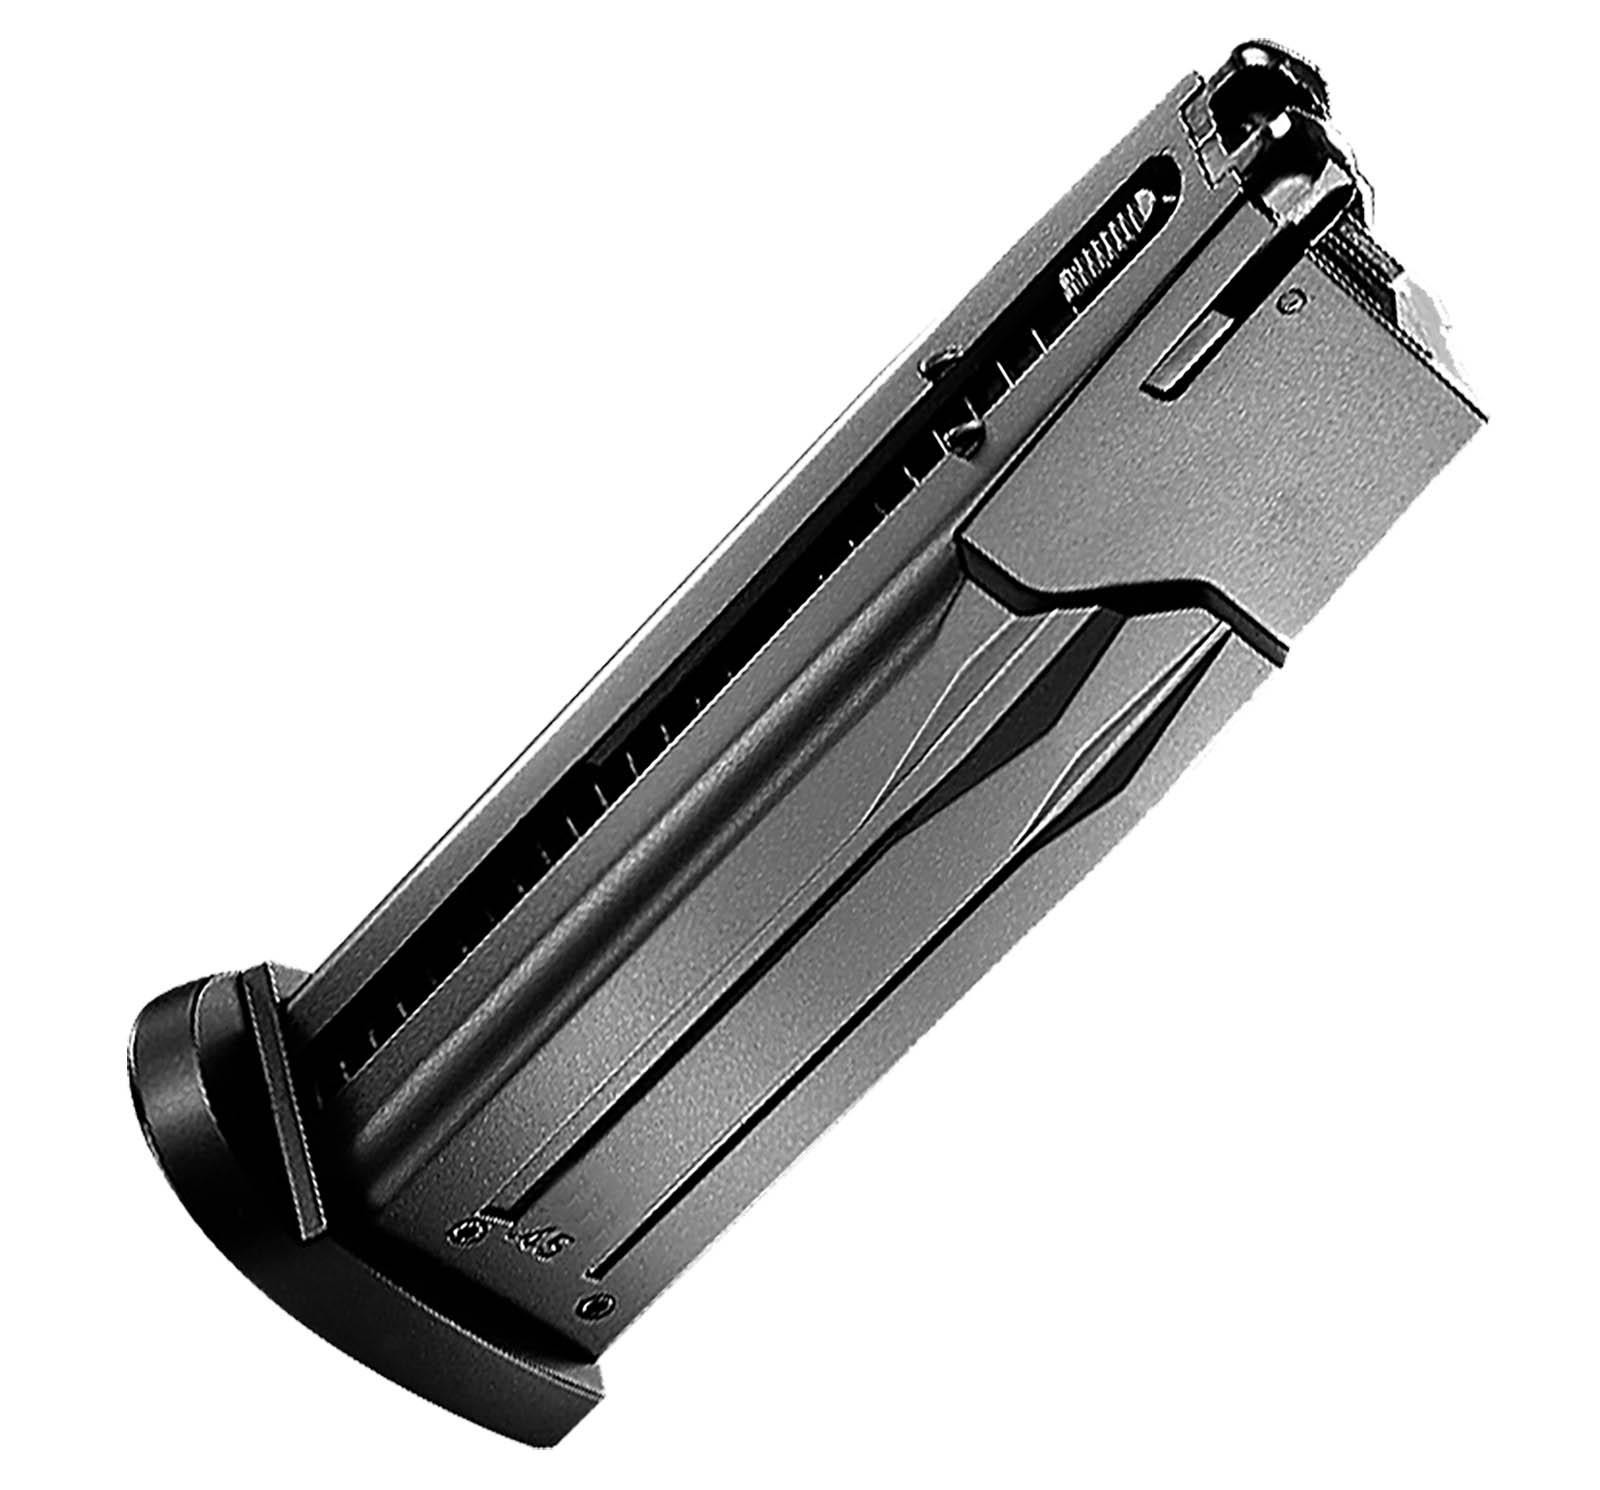 Pistolet 6mm tm capa 5.1 gov gaz